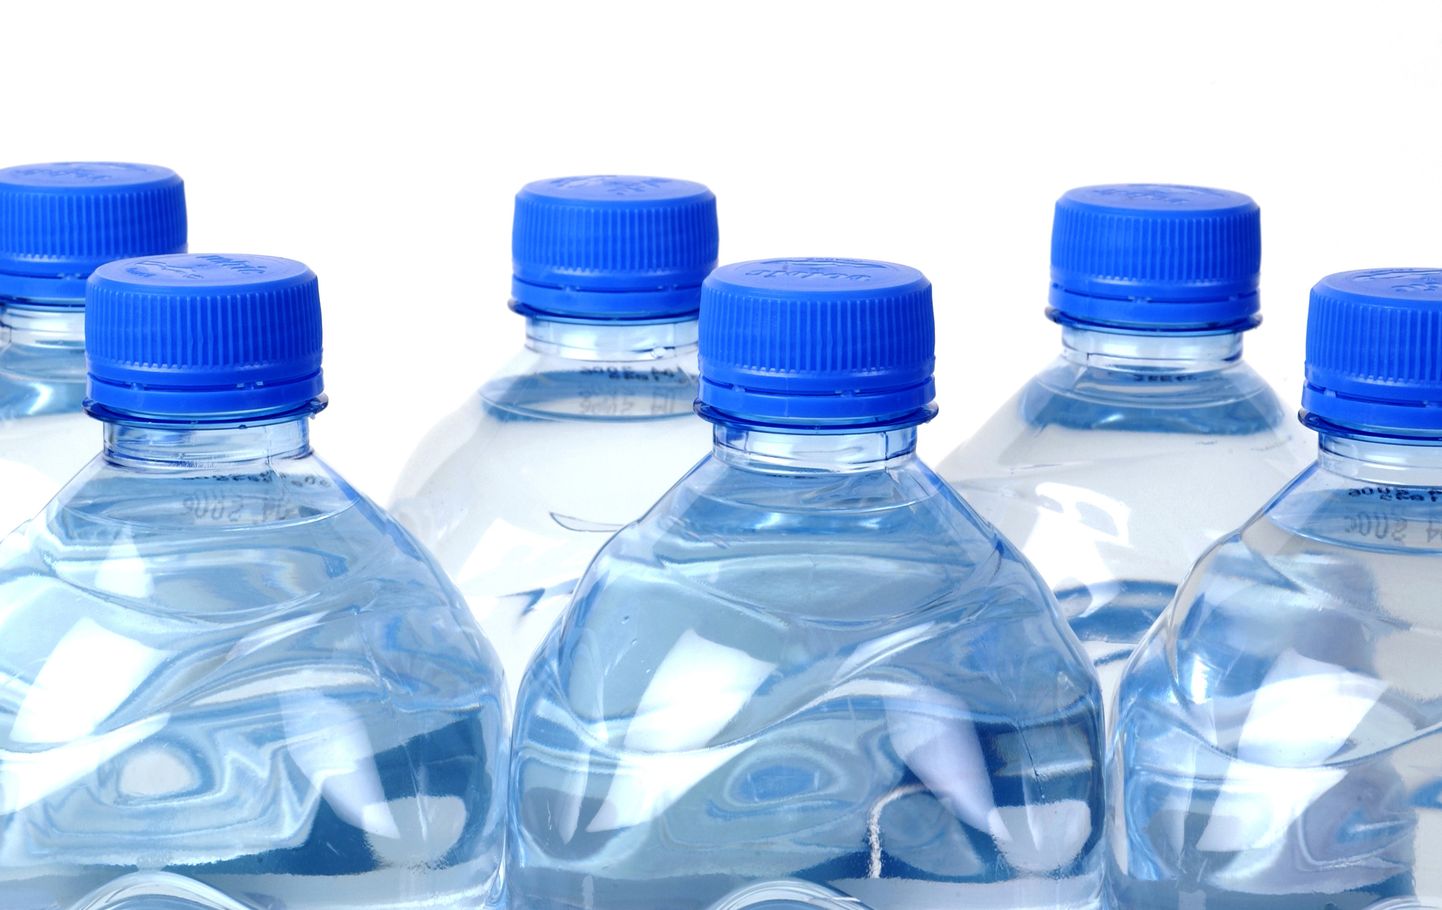 Keskkonnale ja tervisele on kasulikum plastikpudeli asemel juua vett klaas- või metallpudelist.